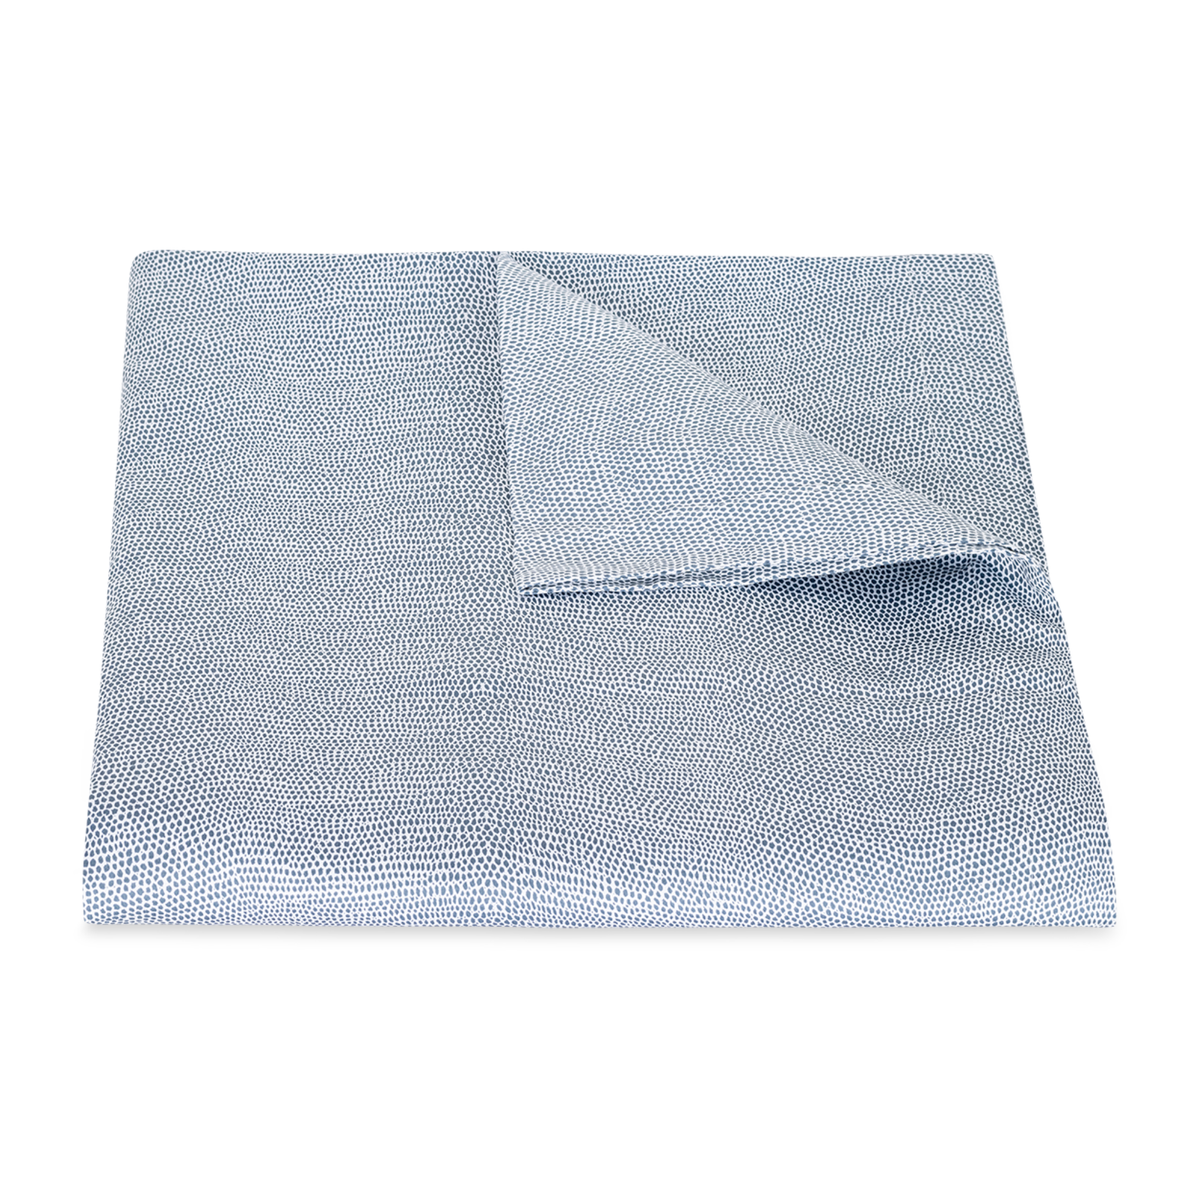 Folded Duvet Cover of Steel Blue Matouk Jasper Bedding